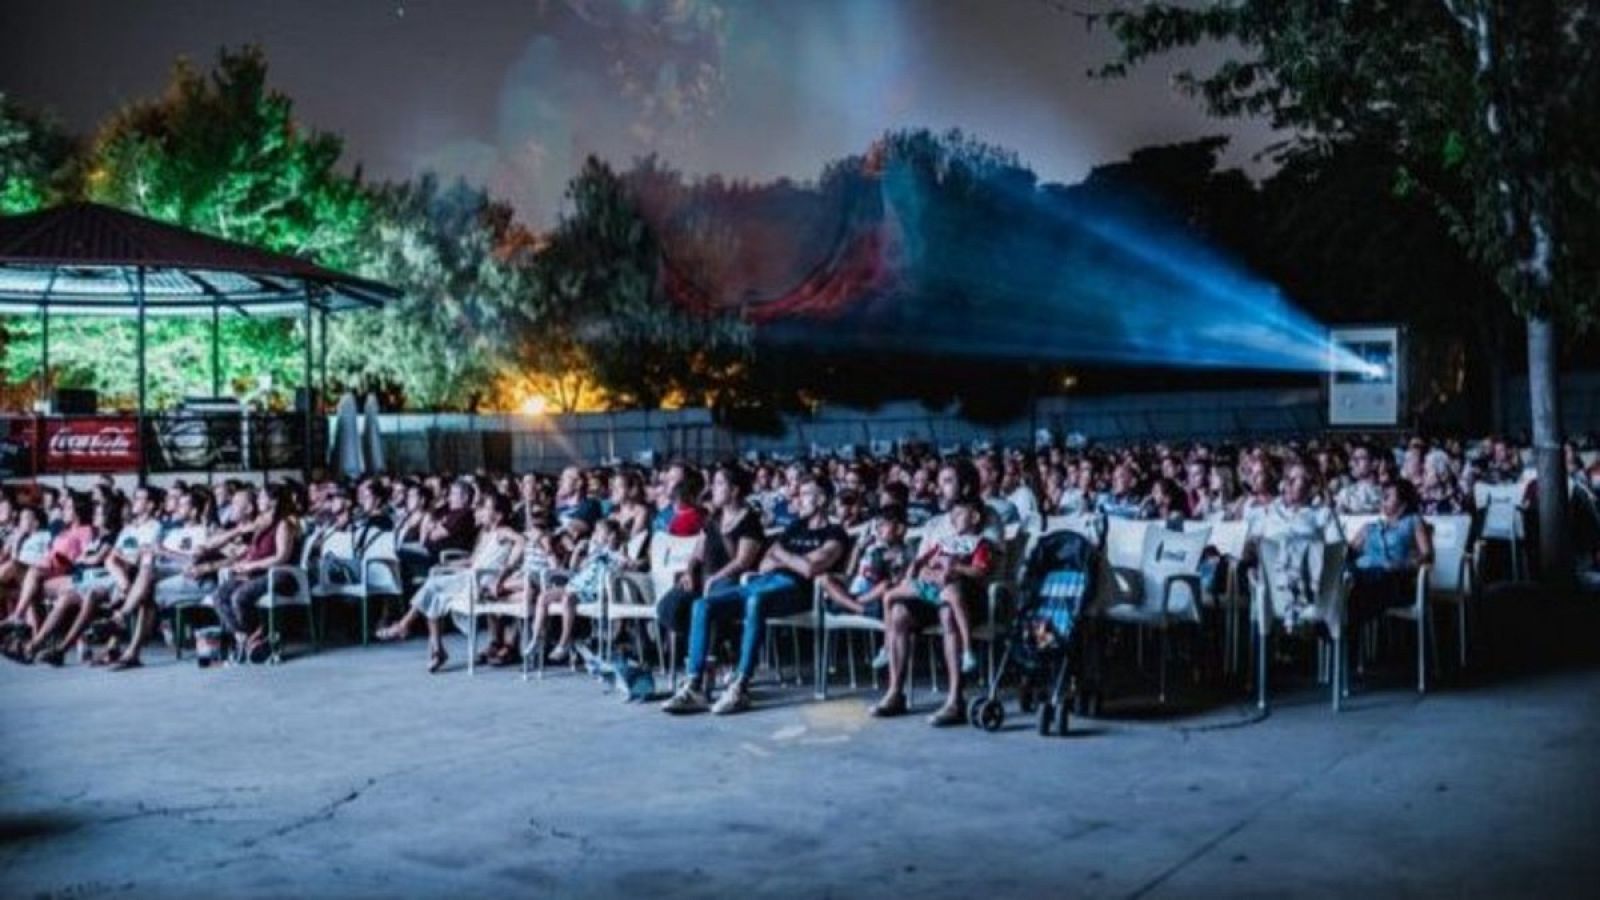 El cine de verano del Parque de la Bombilla, en Madrid, abre sus puertas